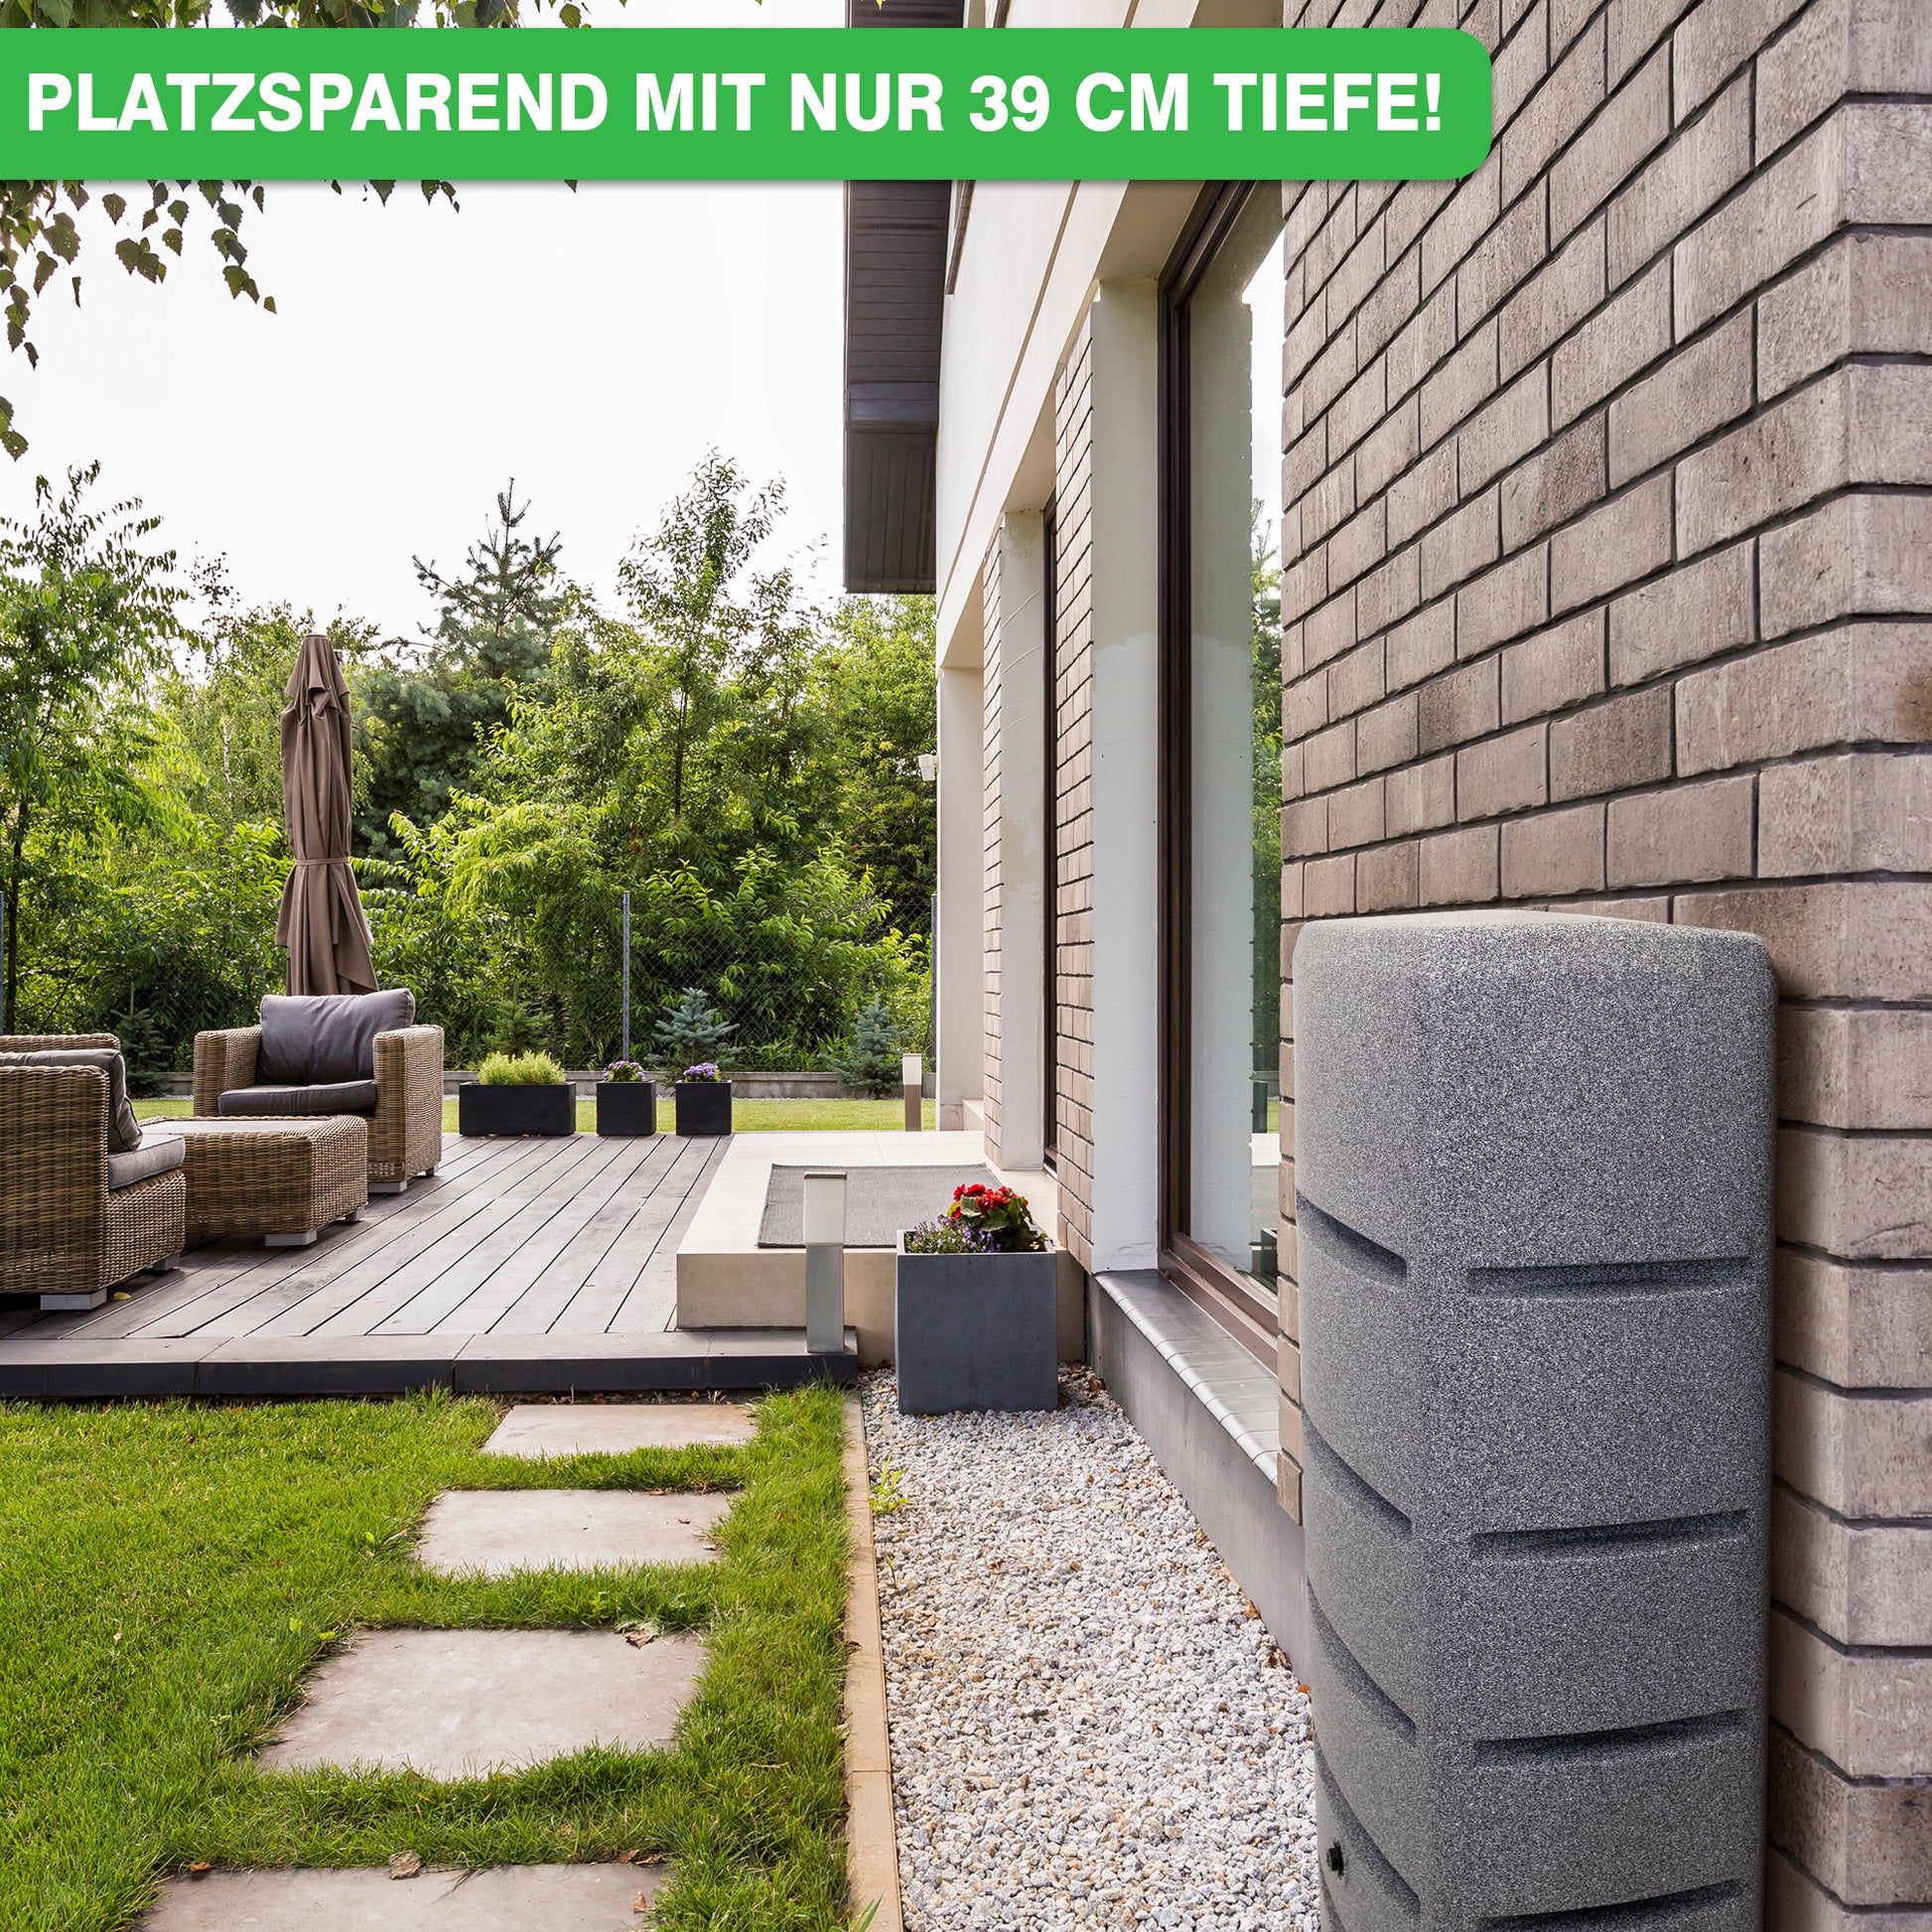 Platzsparende YourCasa Regentonne [EcoTower] mit 39 cm Tiefe installiert neben einem modernen Haus mit Terrasse und Garten.